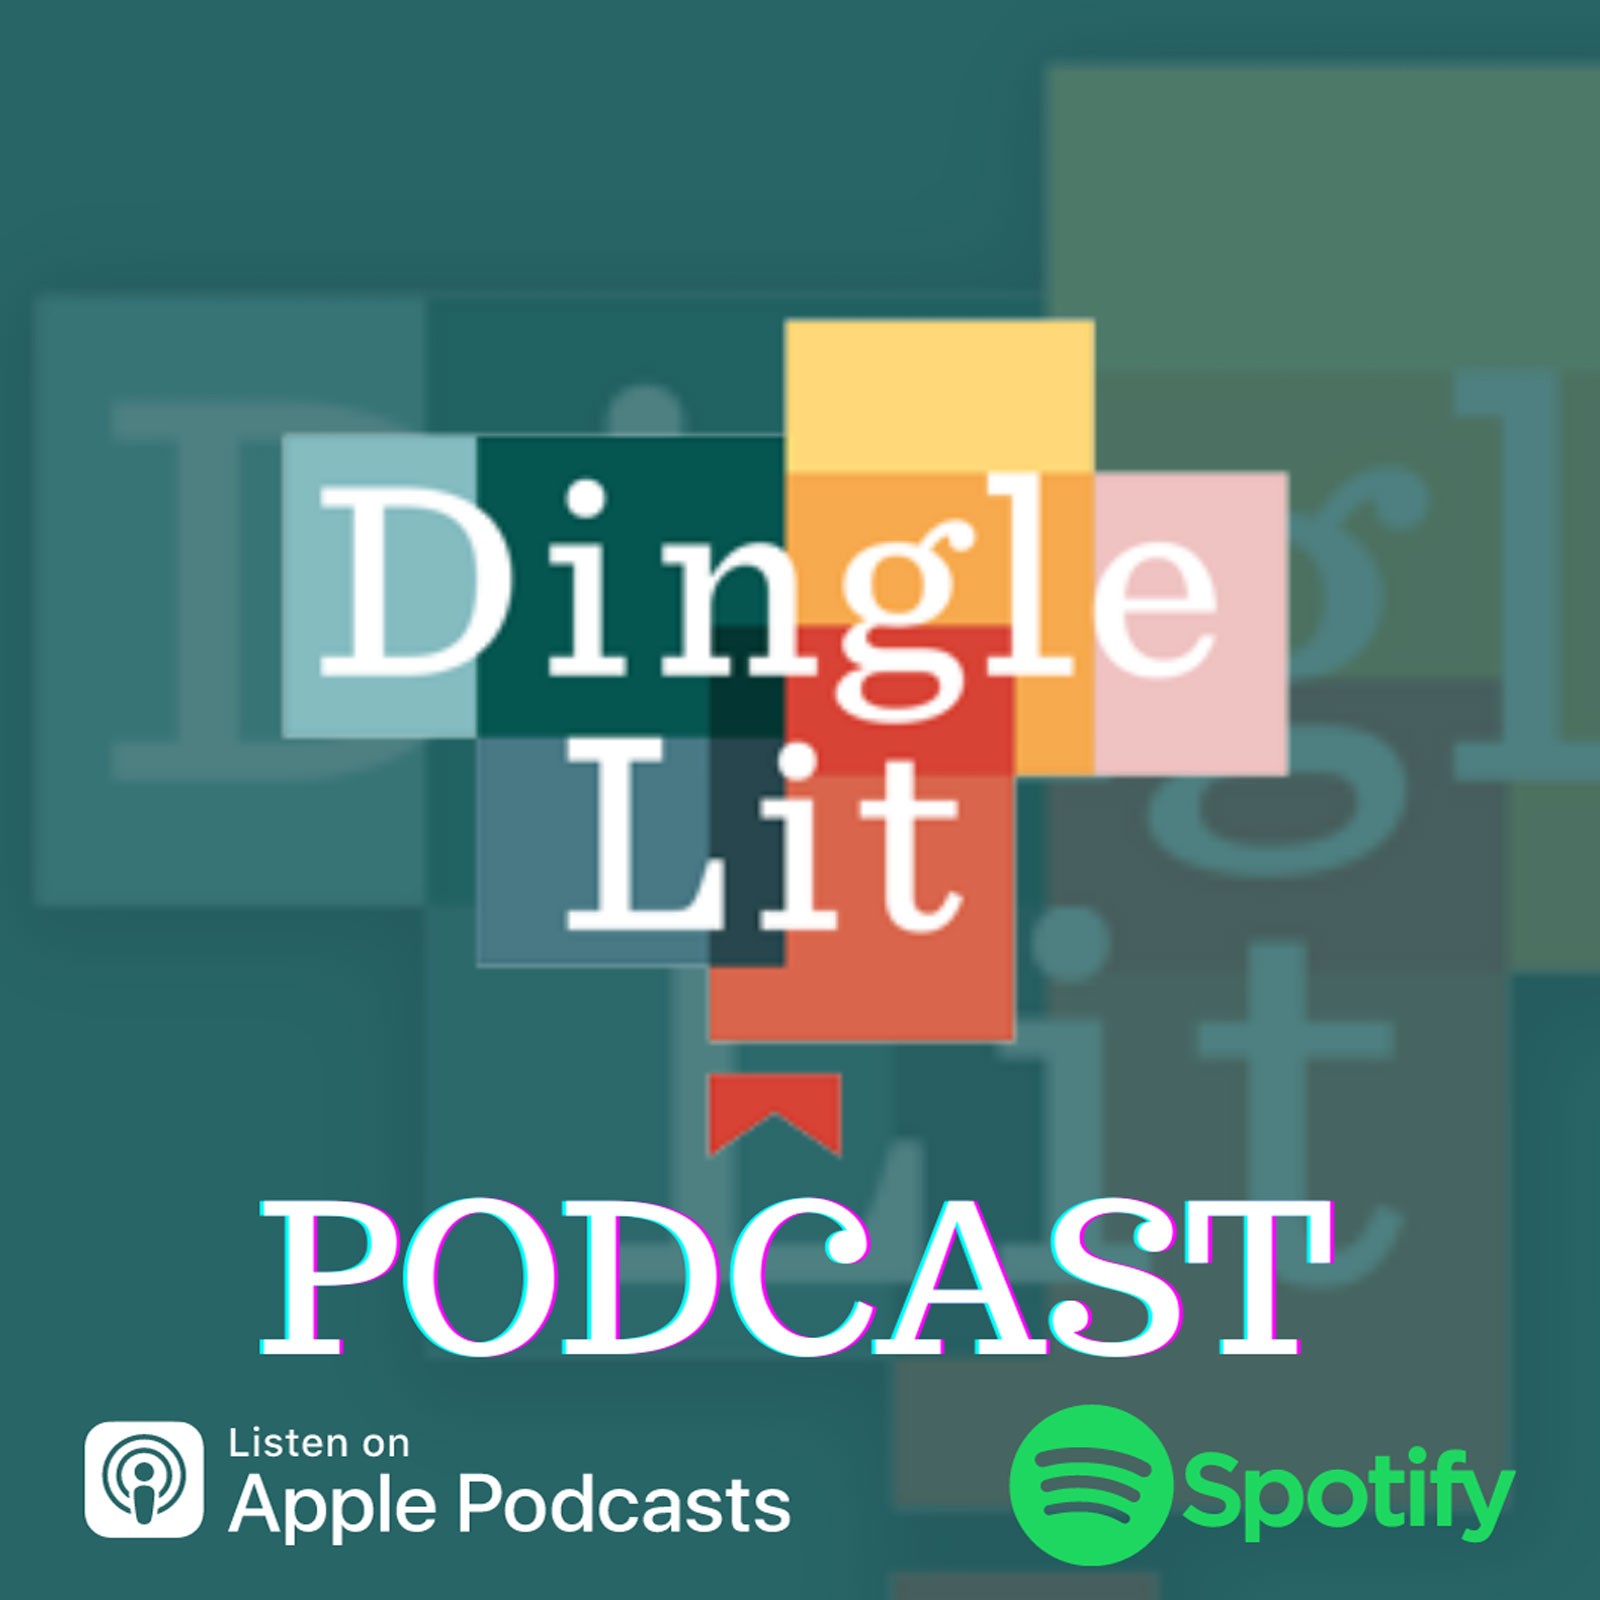 The Dingle Lit Podcast